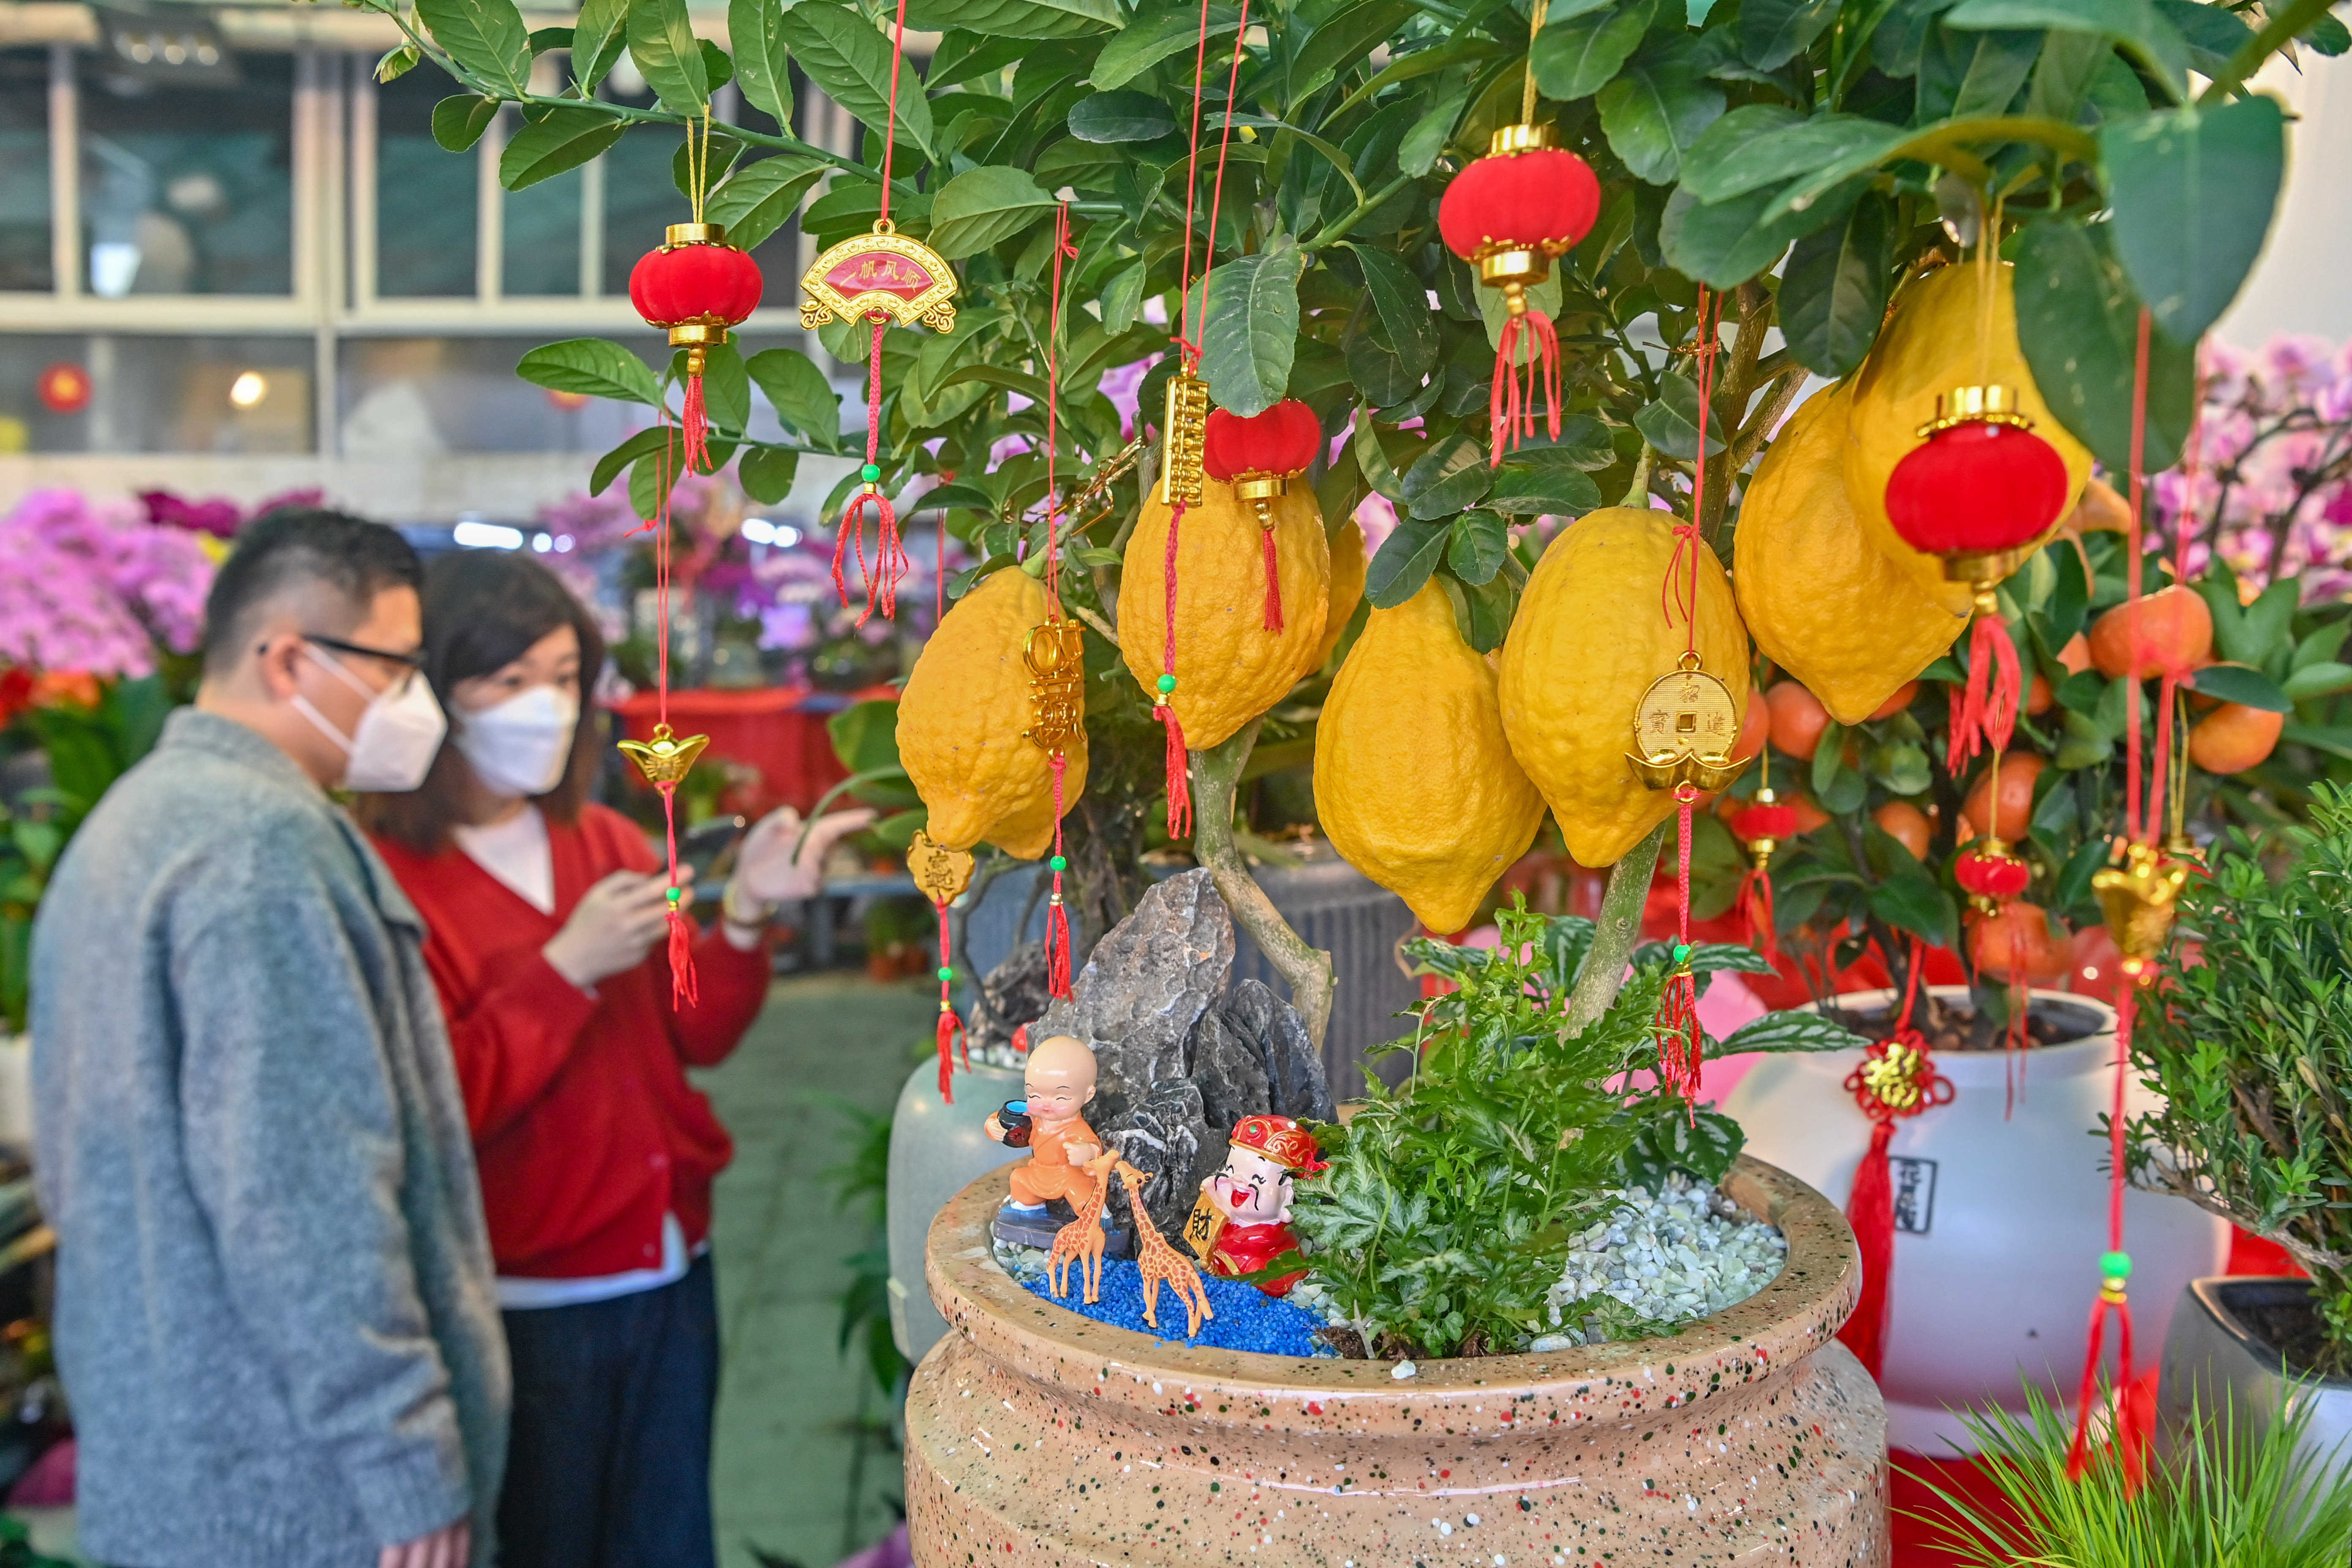 1月13日，在汕头市汕汾路汕头花城，金灿灿的柠檬果挂满枝头，给人丰收的喜悦。林鹏 摄